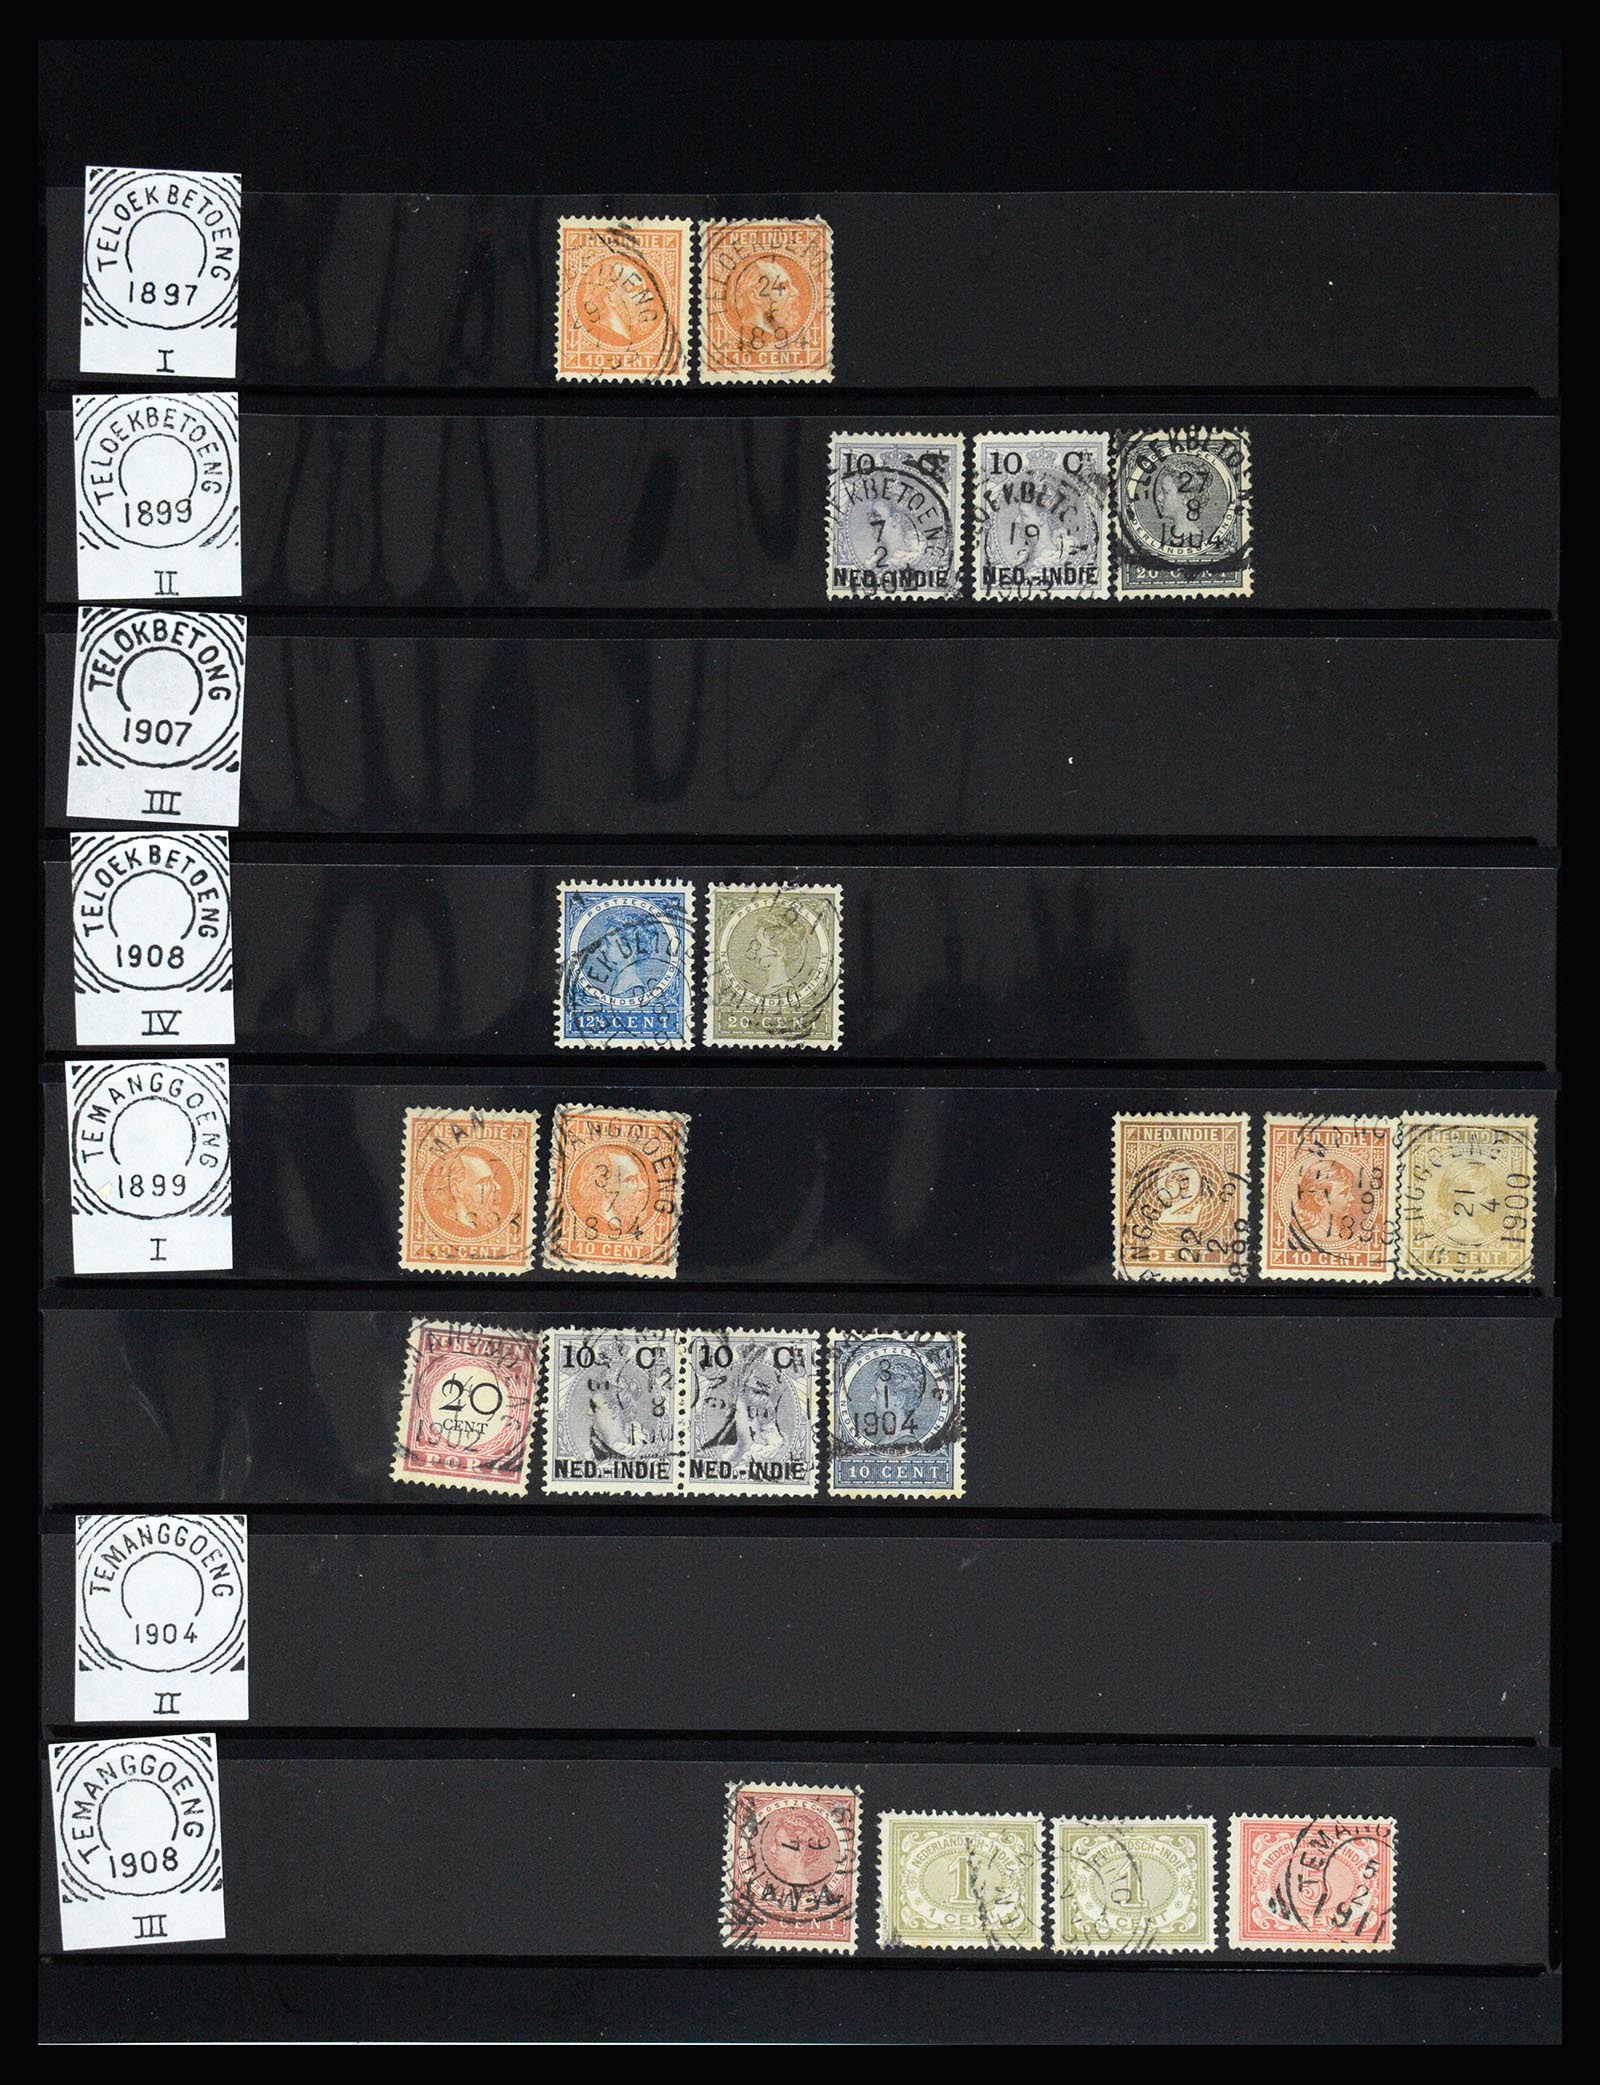 36512 157 - Stamp collection 36512 Nederlands Indië stempels 1872-1930.